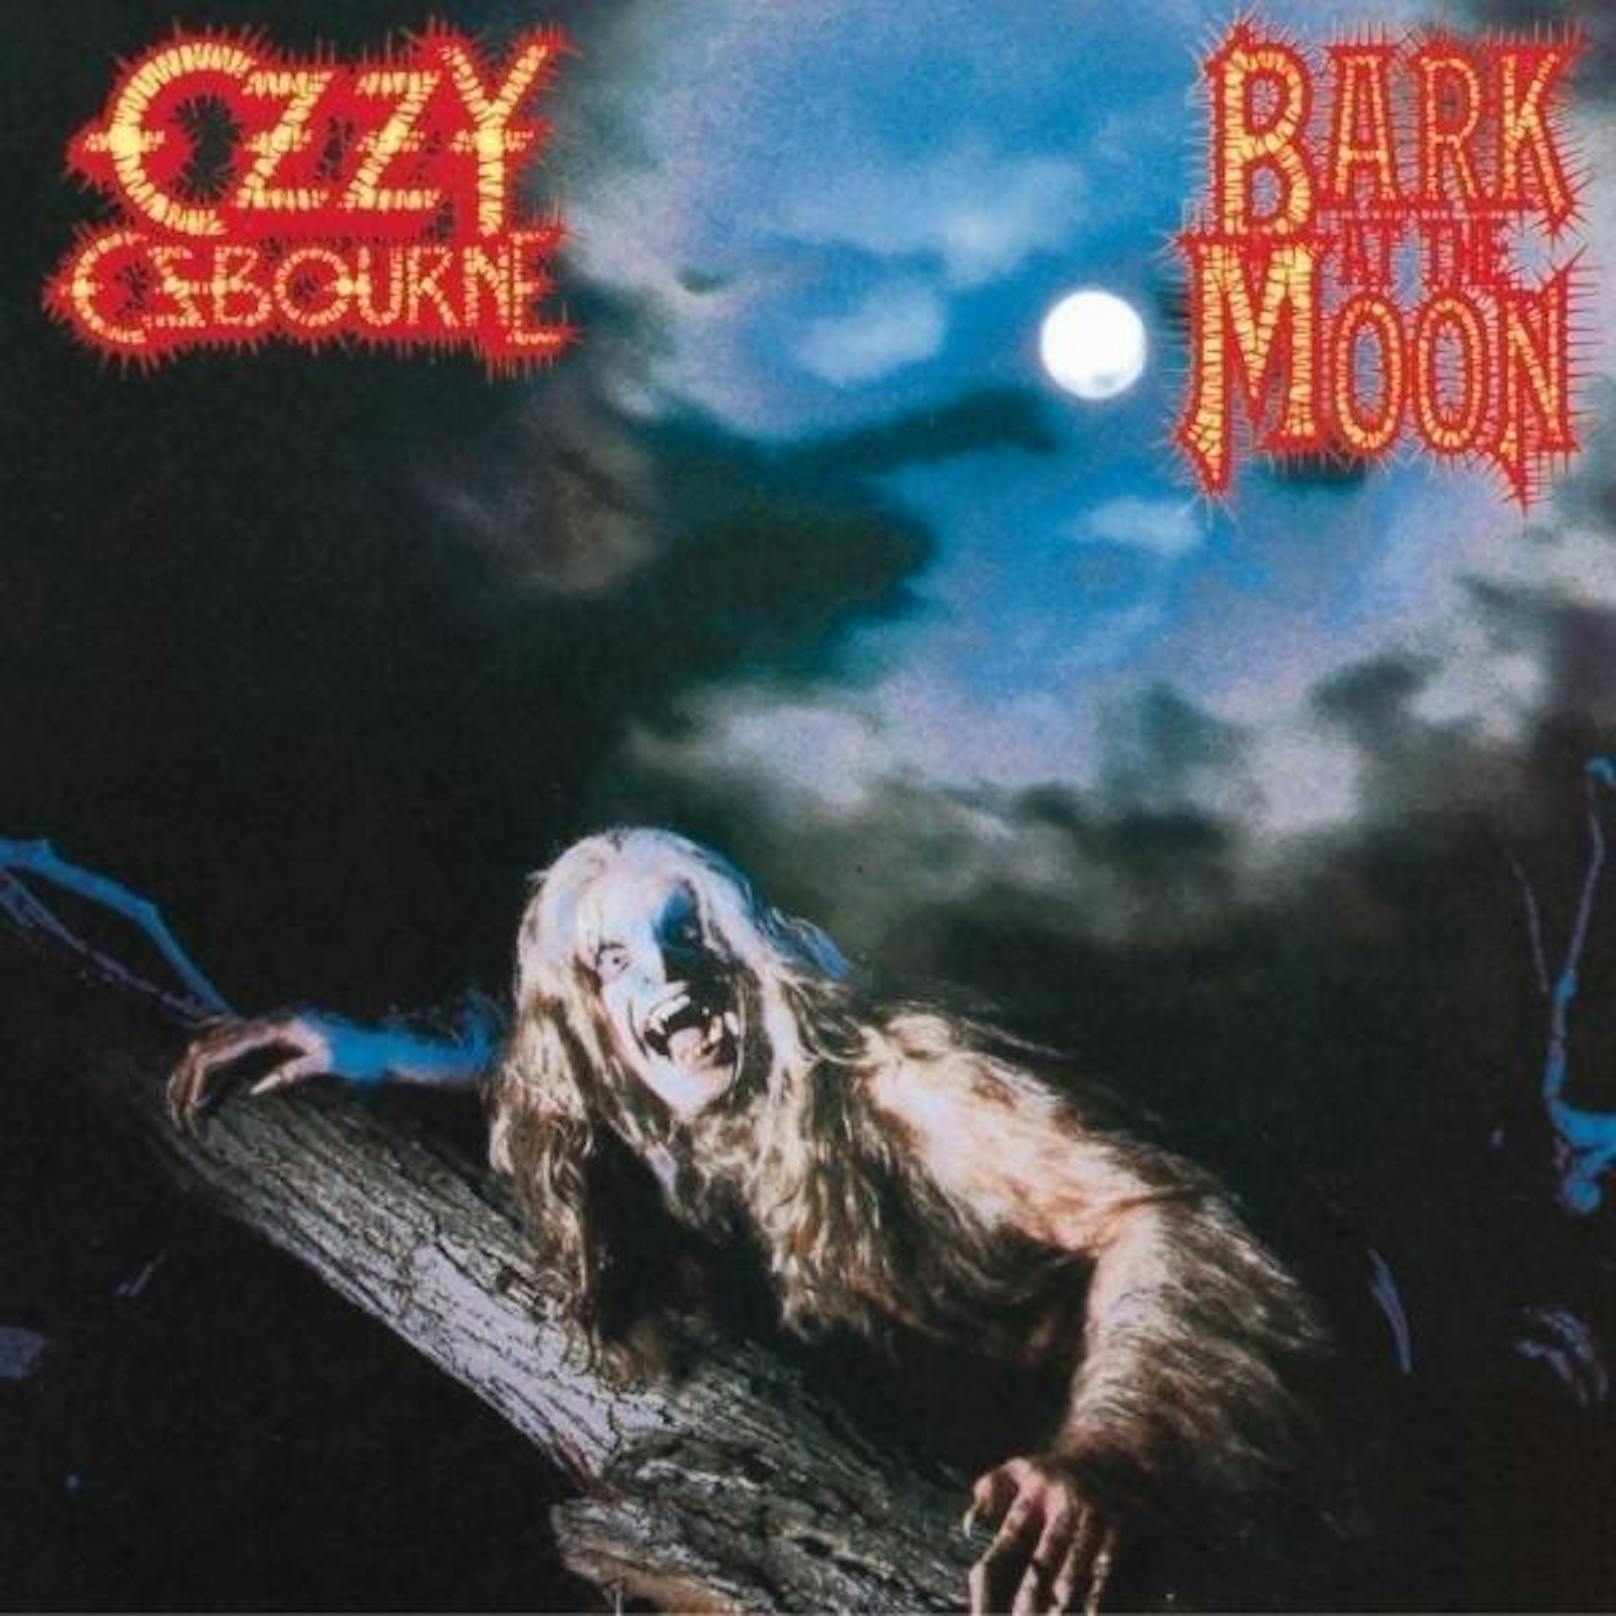 Und was Bonnie Tyler kann, kann Ozzy Osbourne schon lange. Auf einem Sonnenfinsternis-Festival in Carterville im Bundesstaat Illinois wird er seinen Hit "Bark at the Moon" (Den Mond anbellen) singen. Und das ist gut so. Denn wenn Ozzy singt, wird die Welt schon nicht untergehen.